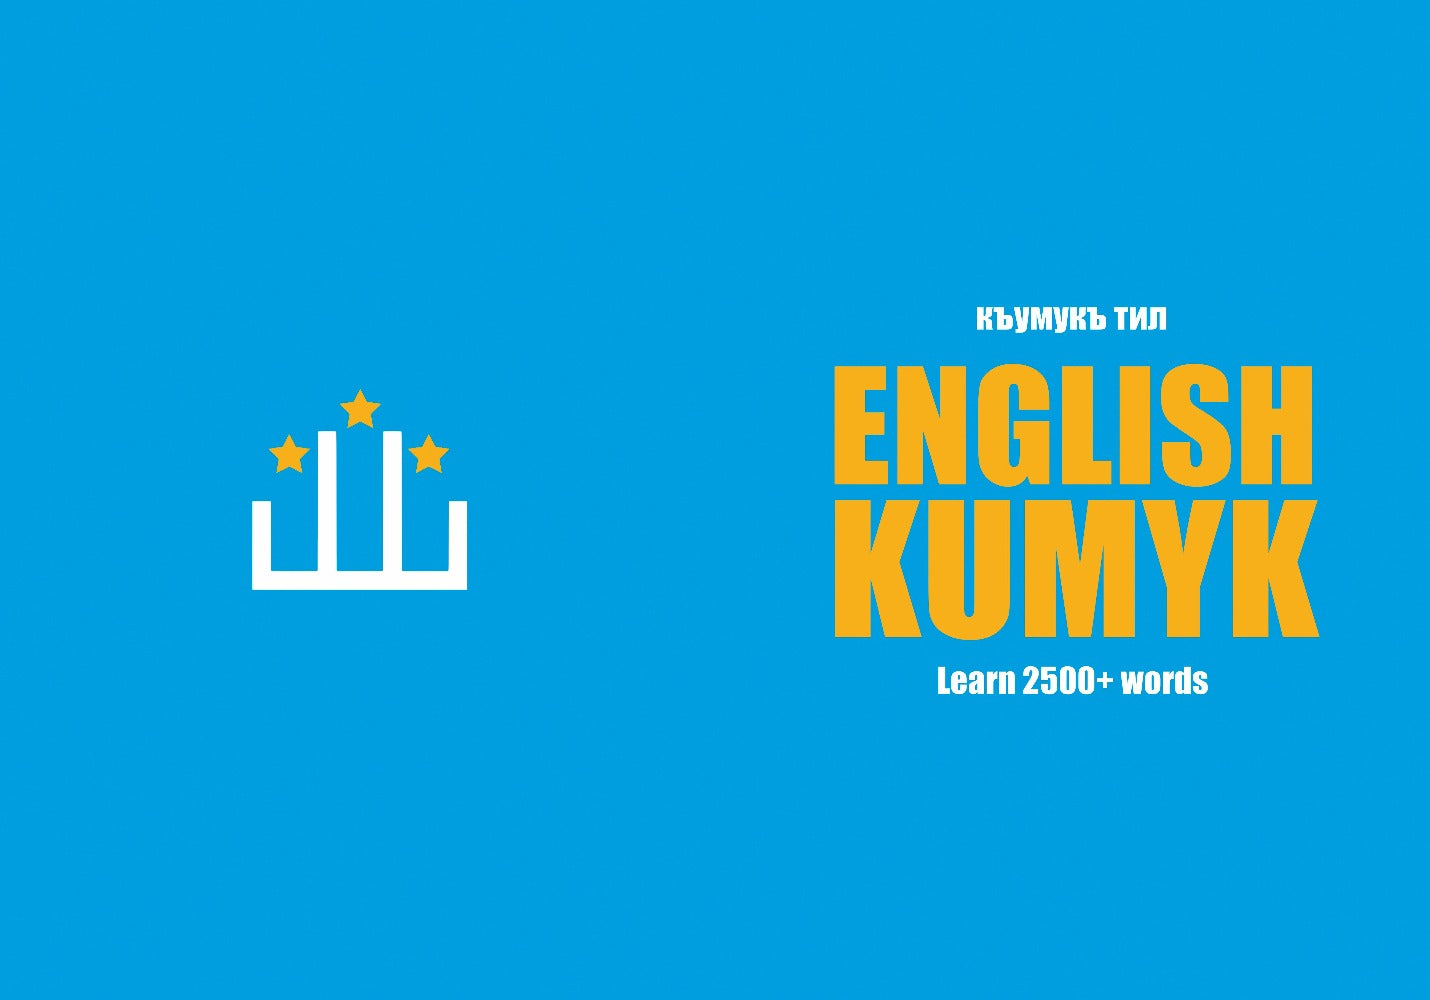 Kumyk language learning notebook cover